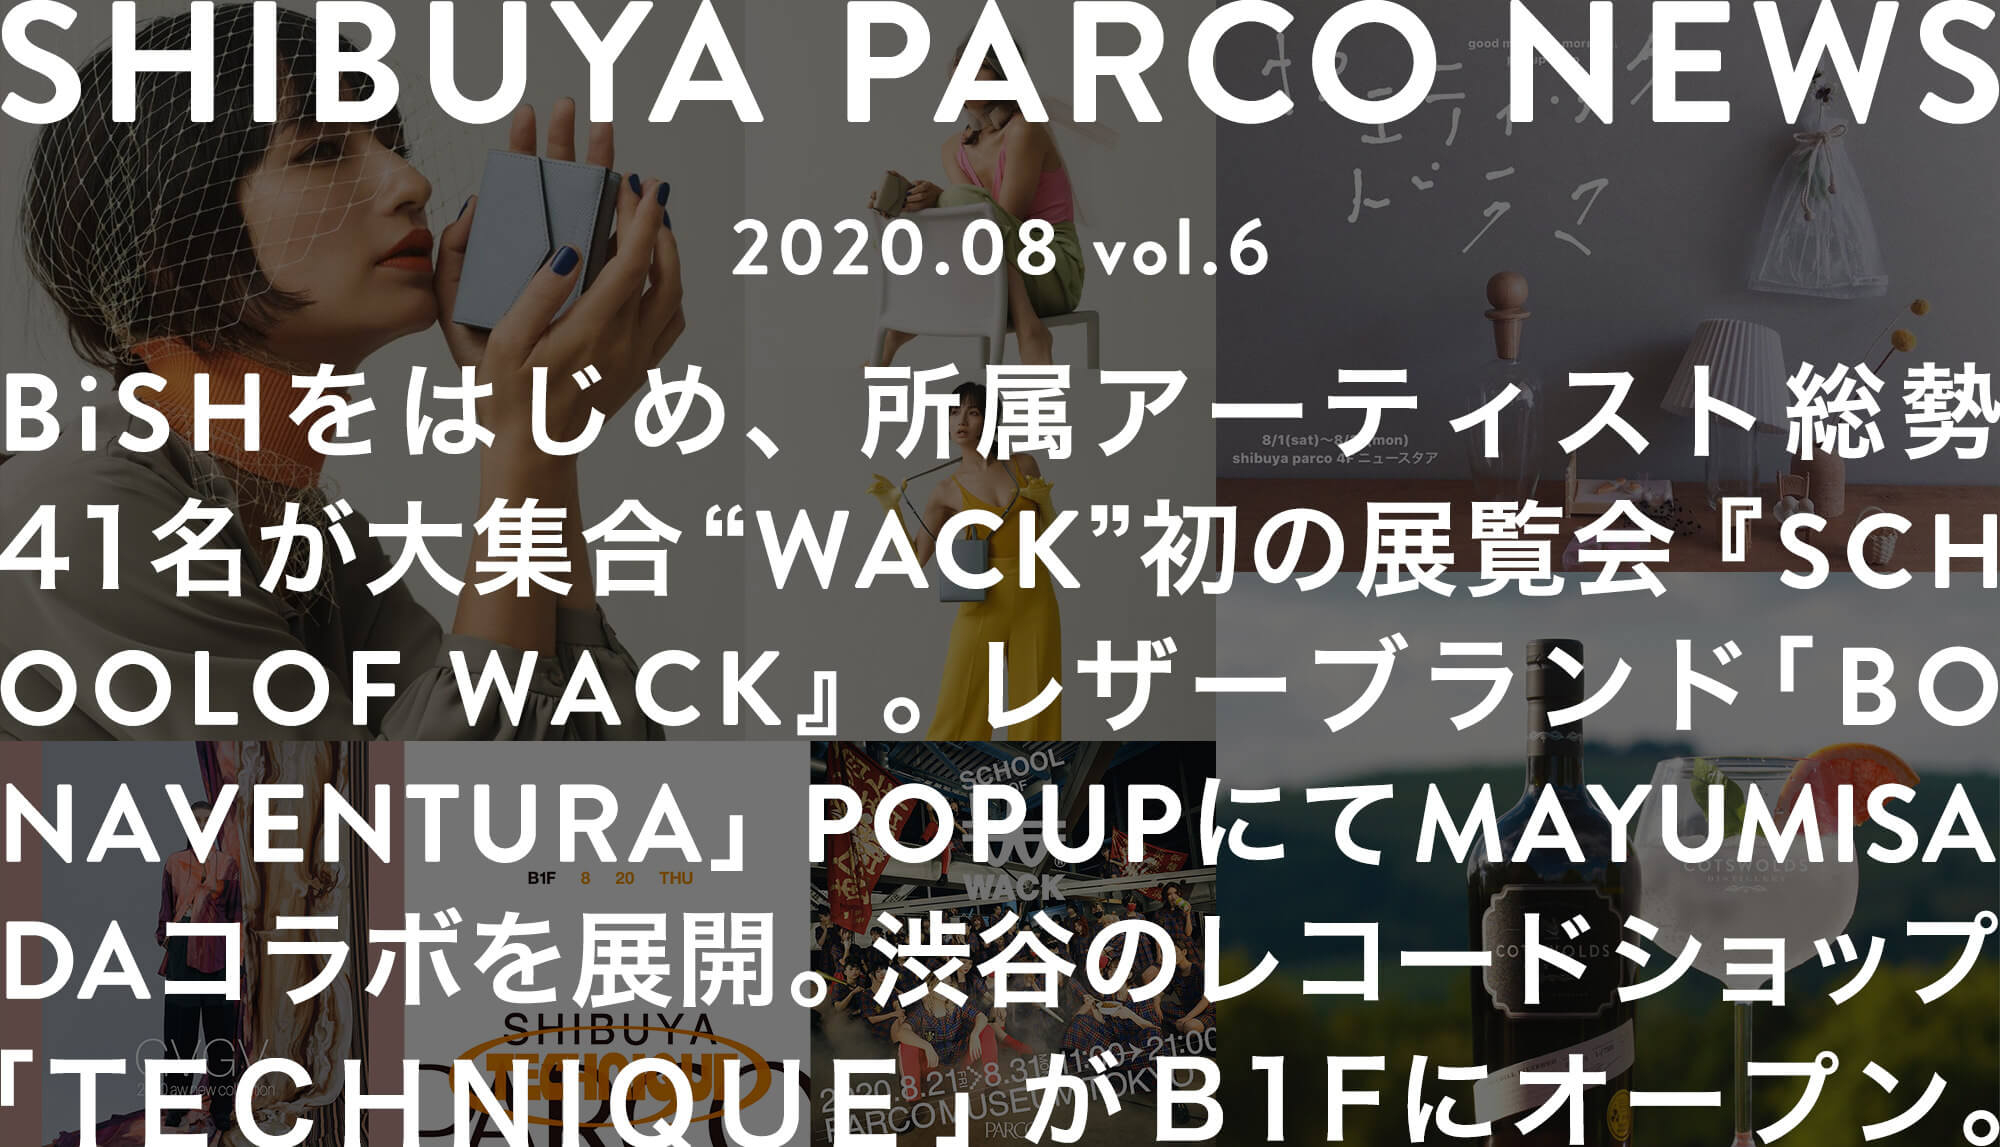 SHIBUYA PARCO NEWS-2020.8-vol.6